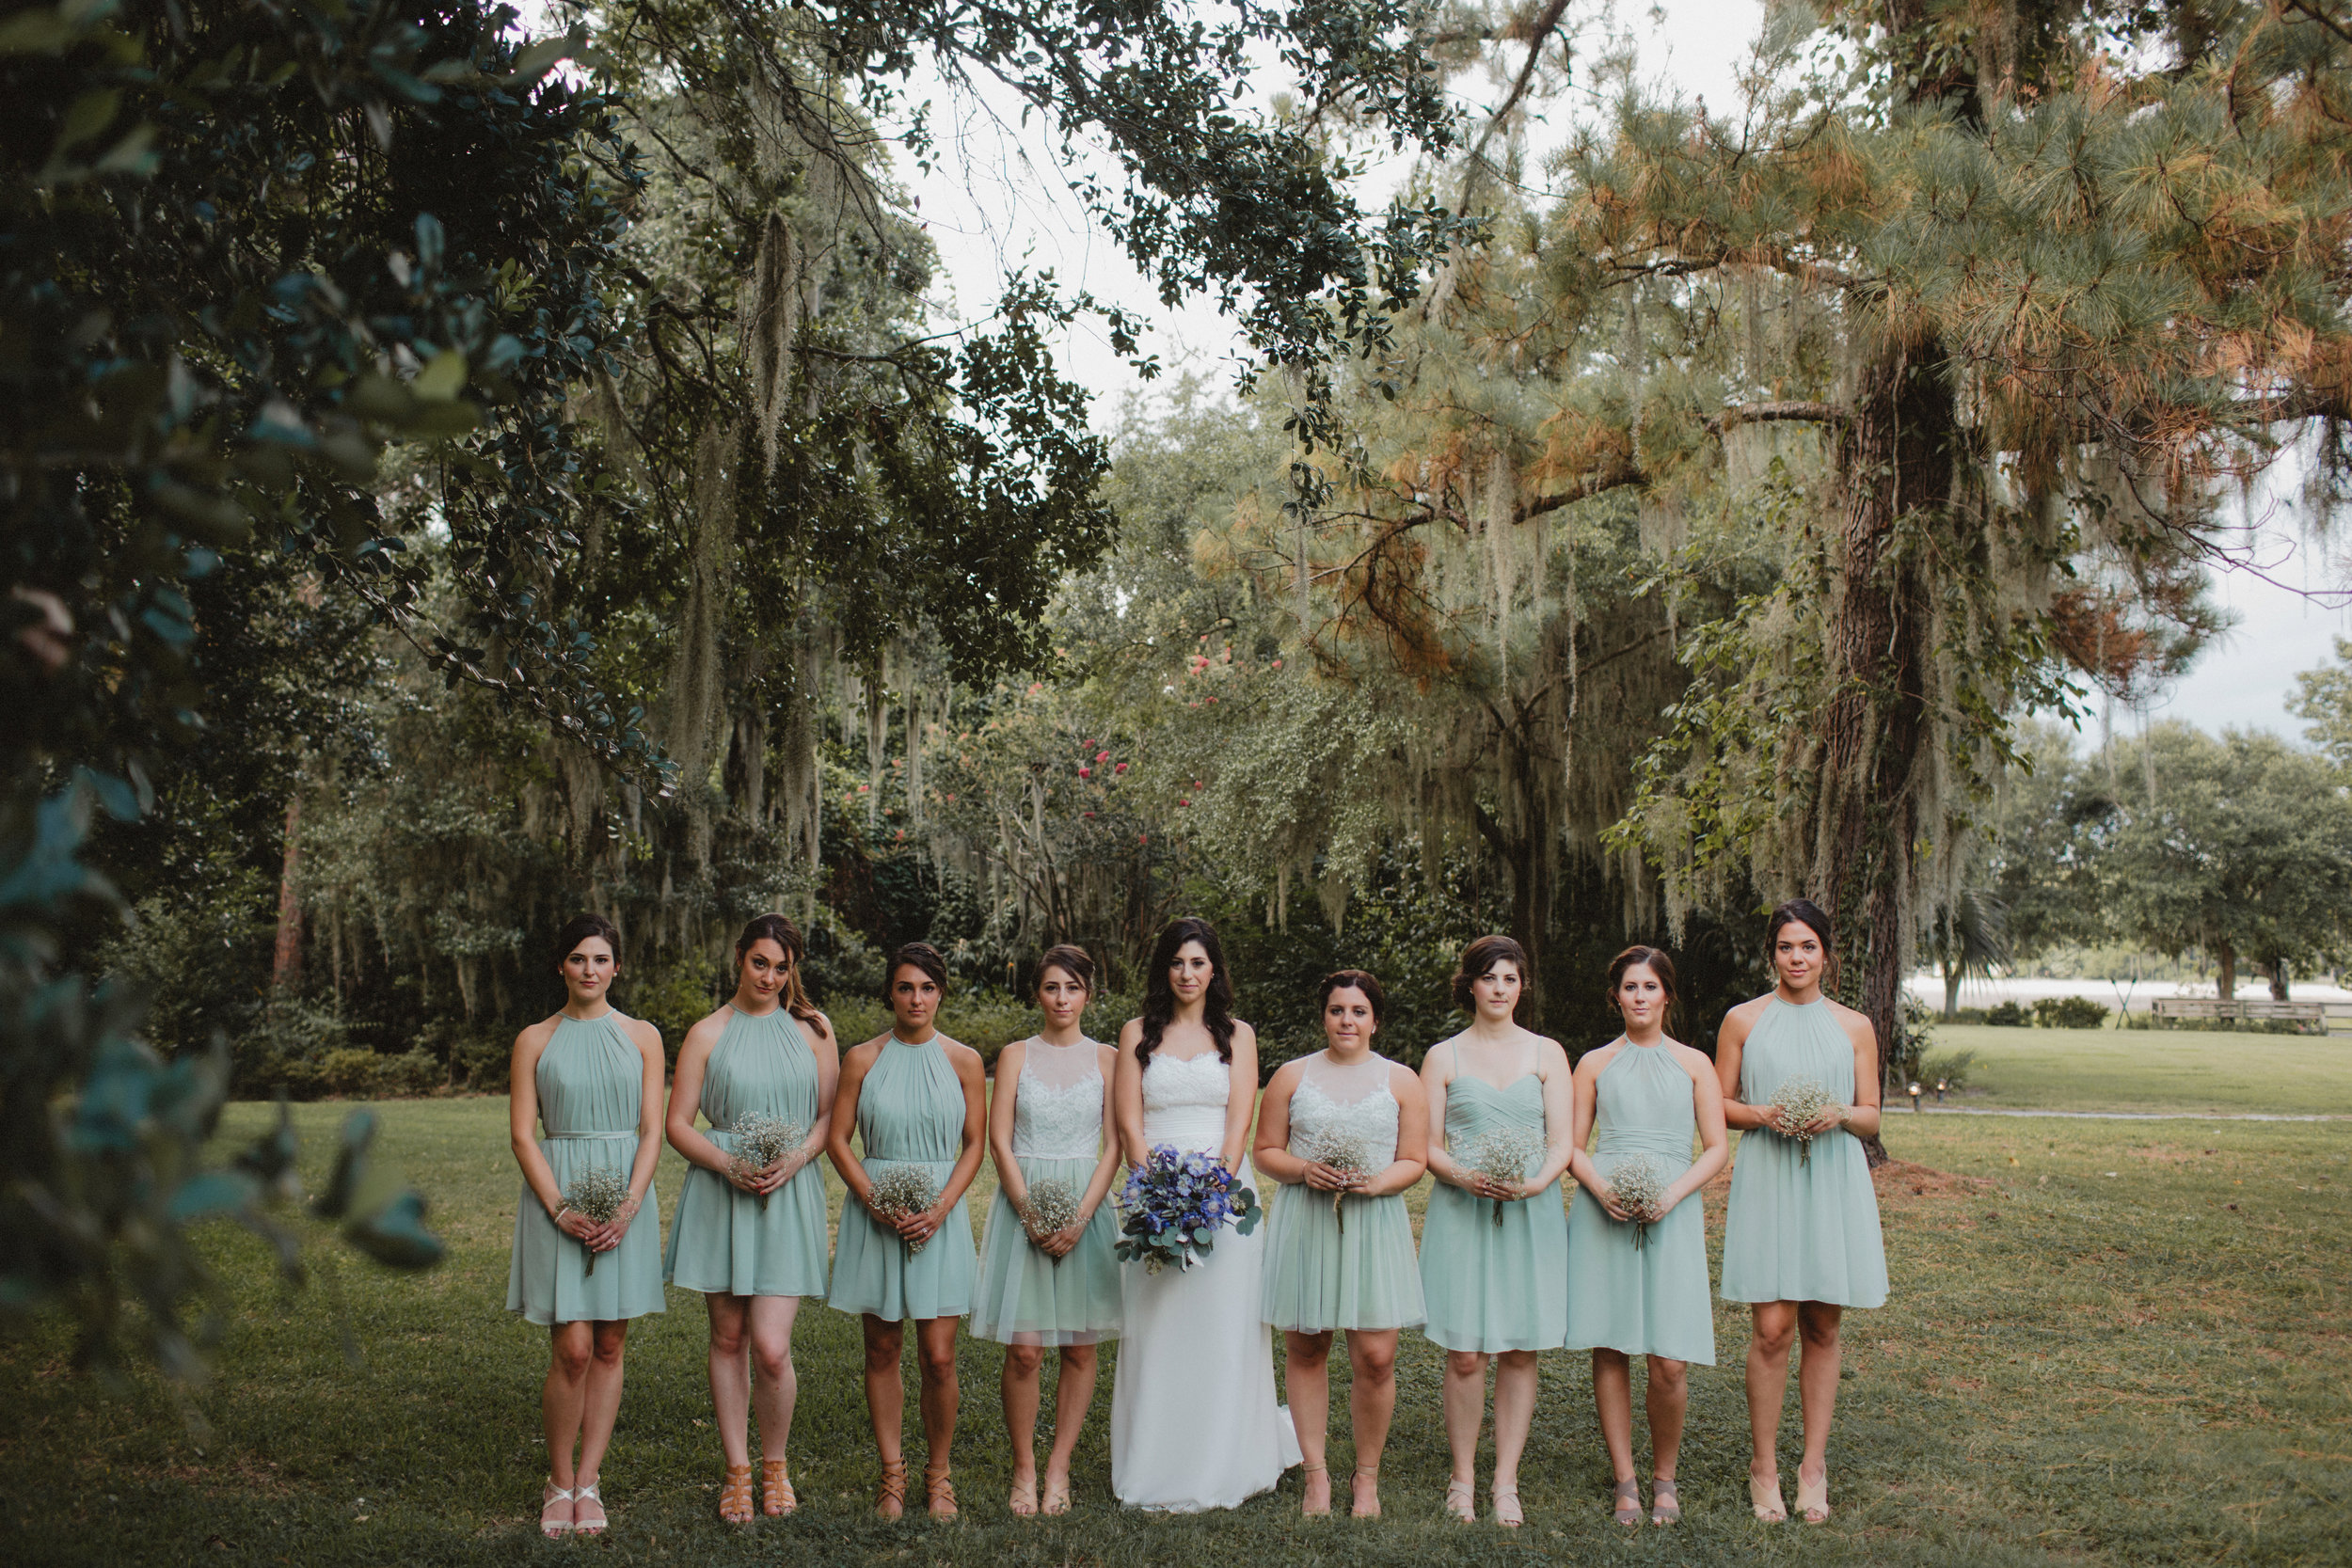 Mint green bridesmaids dresses